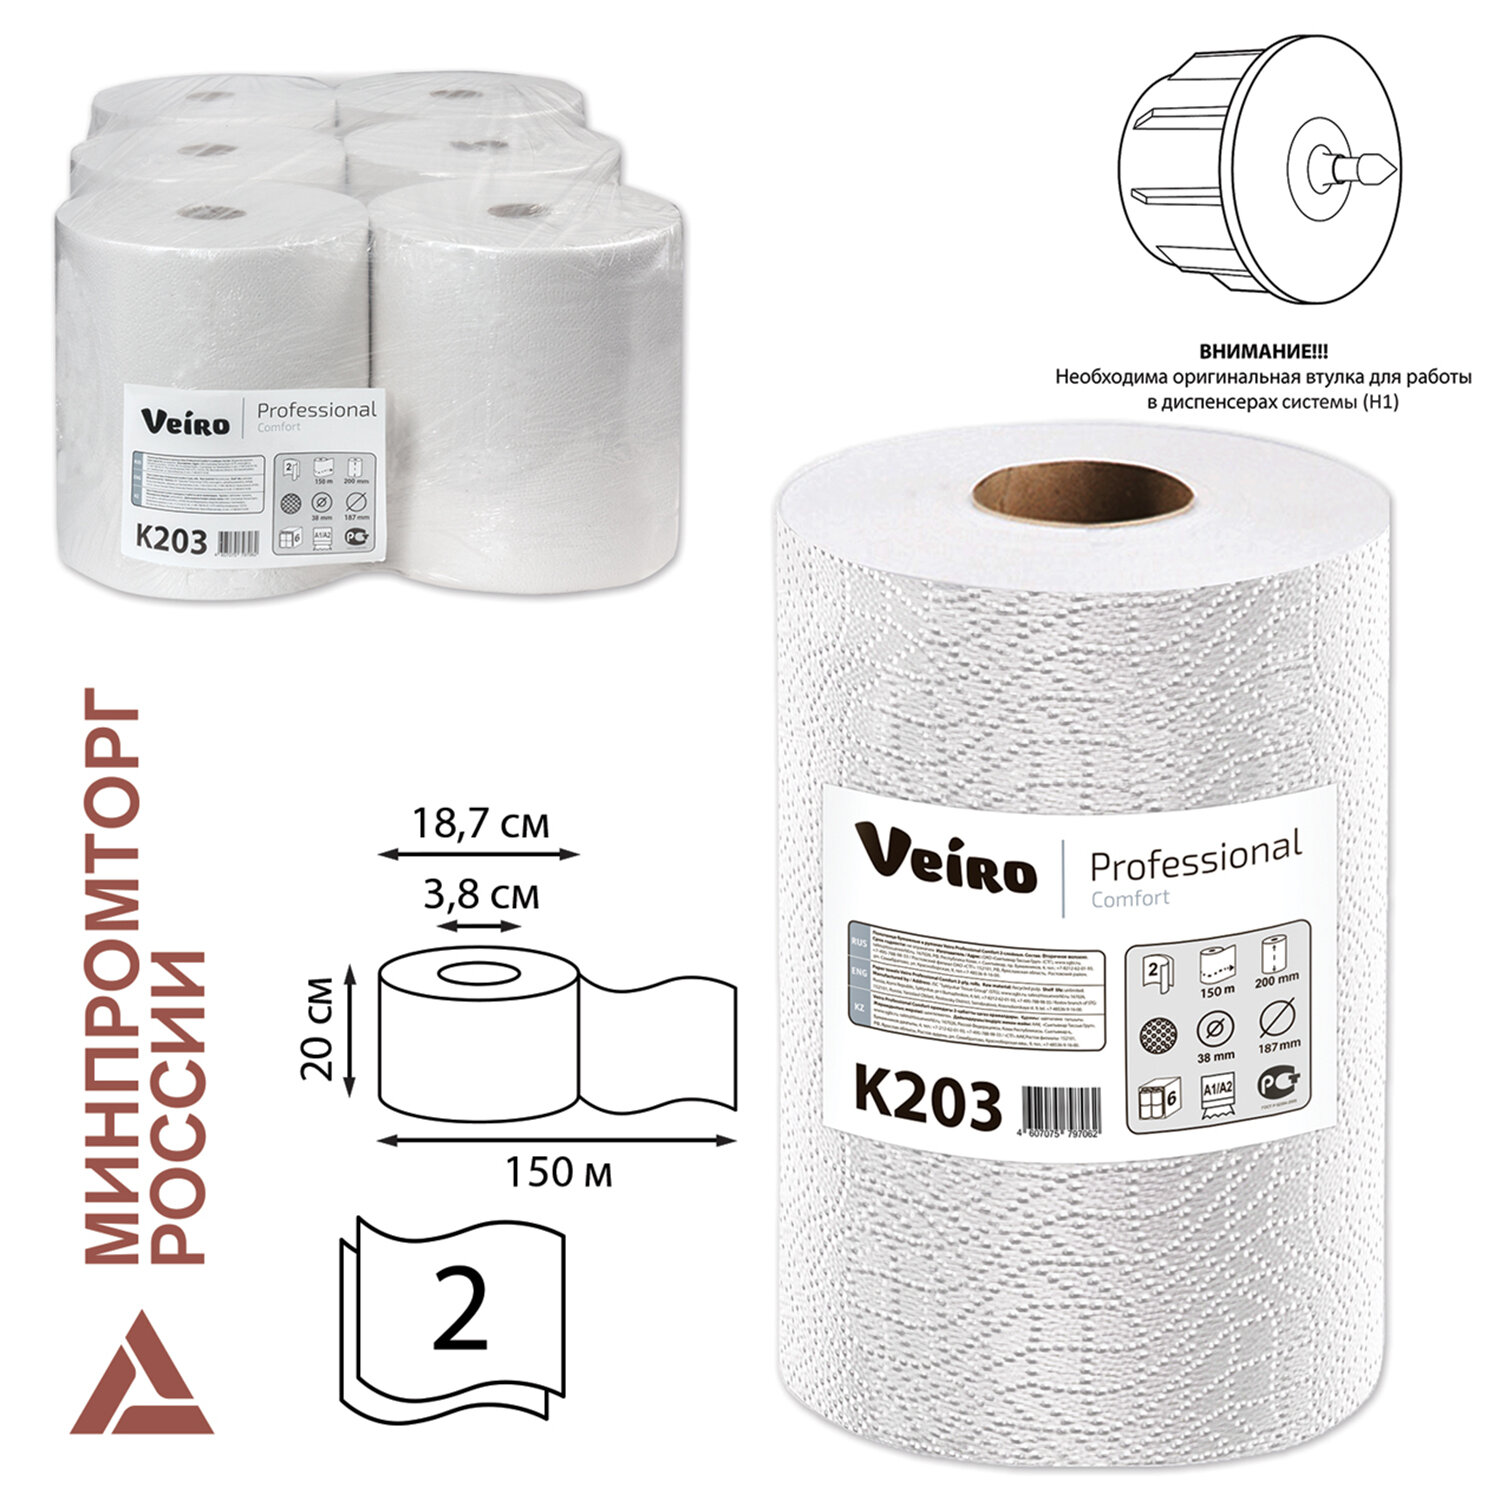 Полотенца бумажные Veiro Comfort, слоев: 2, длина 150 м, натуральный, 6 шт. (K203)